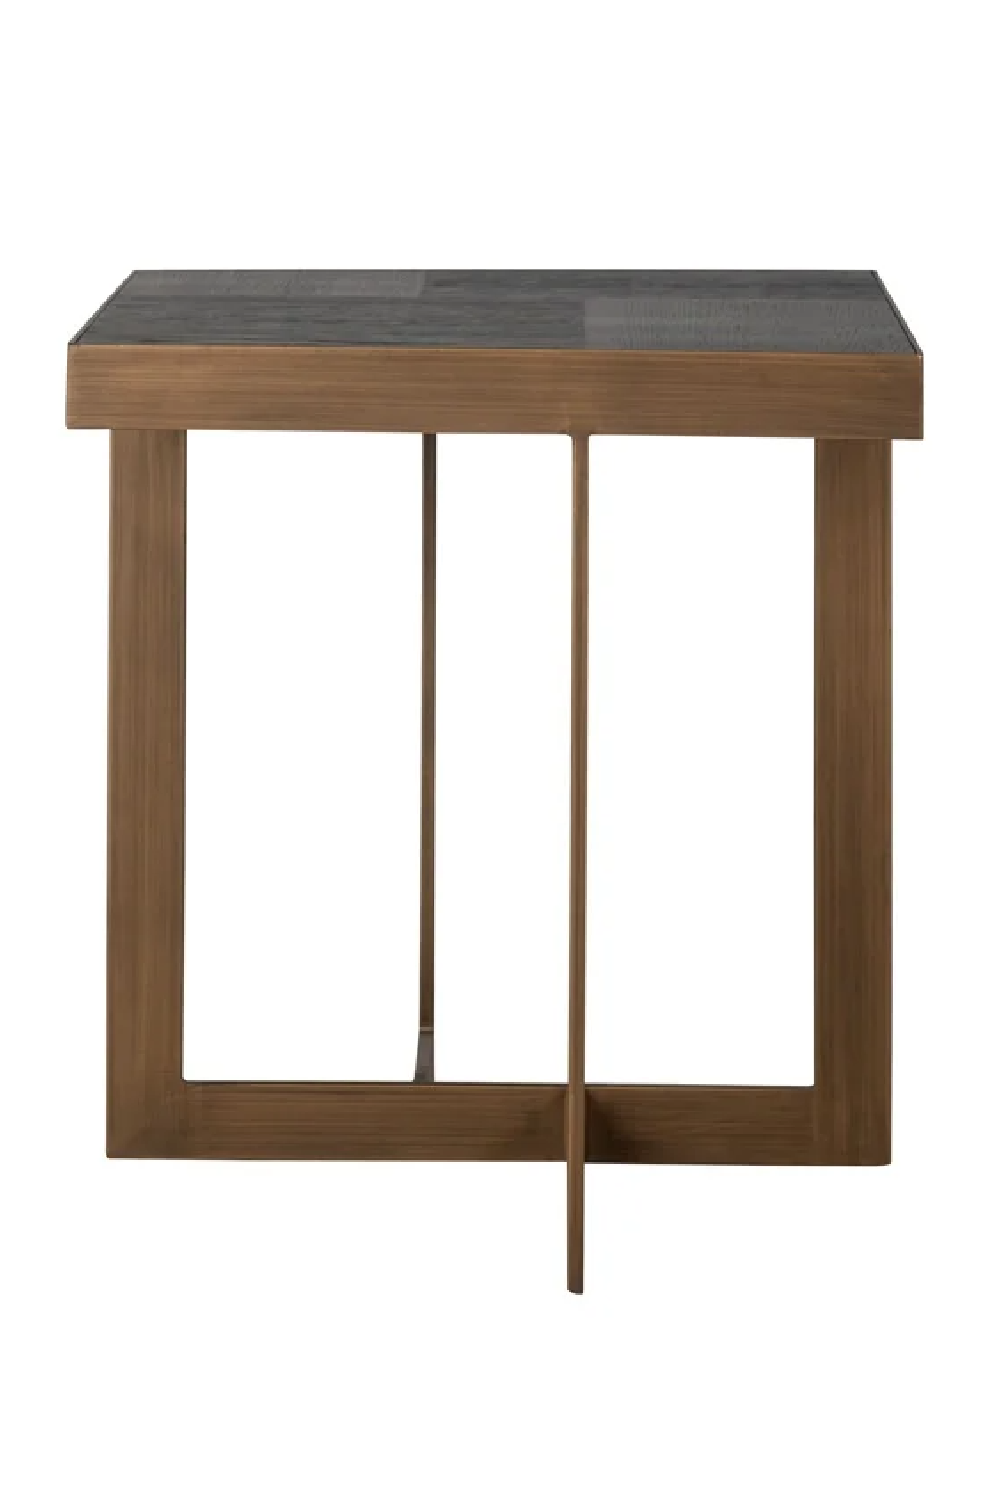 Contemporary Oak End Table | OROA Cambon | Oroa.com